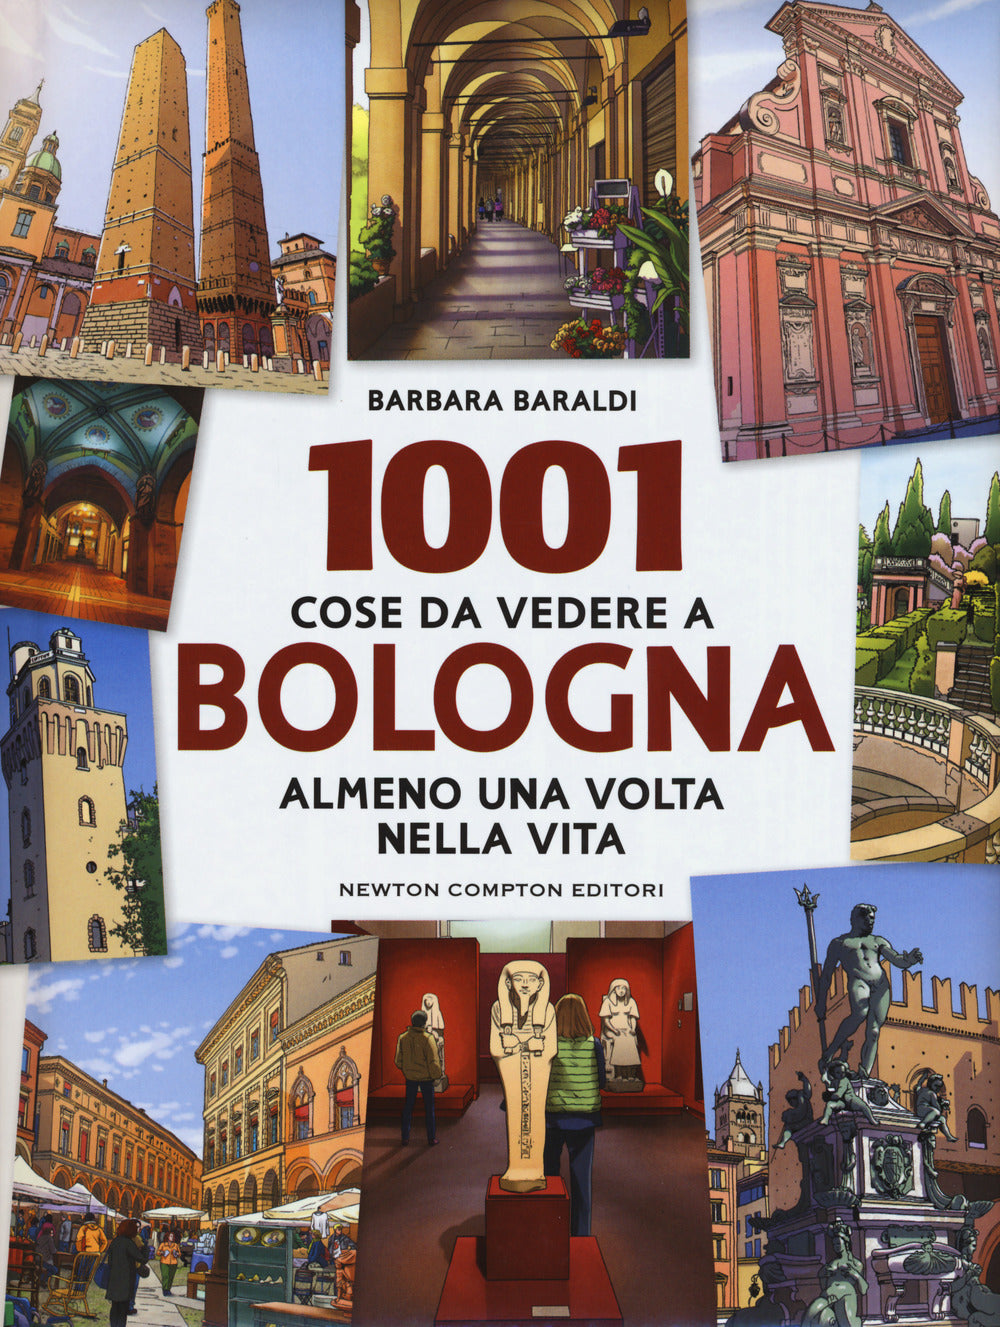 1001 cose da vedere a Bologna almeno una volta vita.